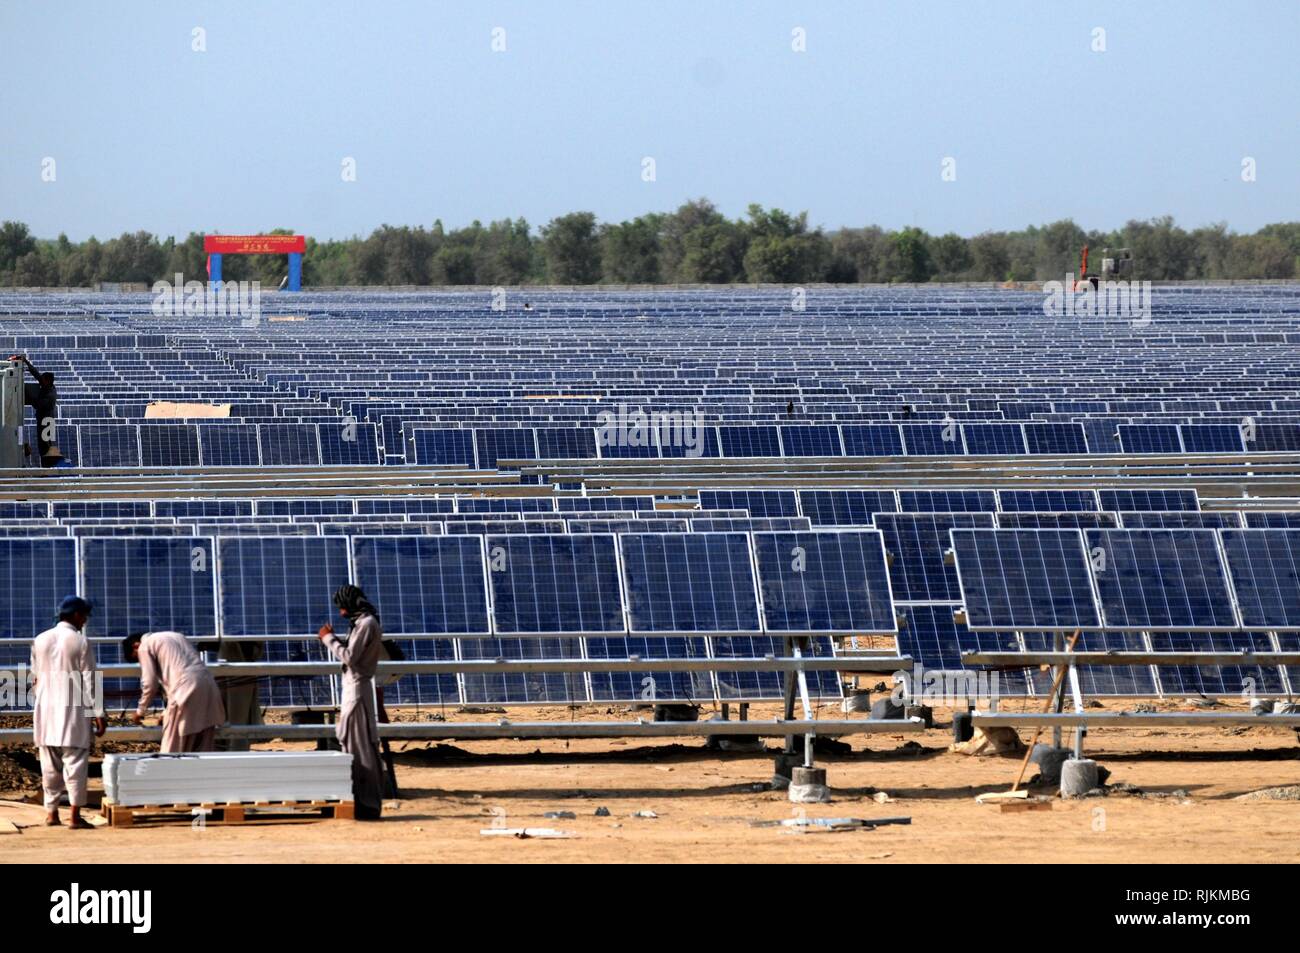 (190207) -- PECHINO, Febbraio 7, 2019 (Xinhua) -- lavoratori installare pannelli solari fotovoltaici per l'Zonergy 900 MW del progetto solare in Bahawalpur, Pakistan, Agosto 28, 2015. Primo Ministro pakistano Imran Khan ha detto mercoledì che la China-Pakistan corridoio economico (CPEC) porterà a un host di opportunità economiche per il paese del sud-ovest della provincia di Balochistan, relazioni locali detto. Durante una sua conversazione con rappresentanti politici del Balochistan partito Awami, il primo ministro ha detto che lo sviluppo del porto di Gwadar aprirà una nuova era di prosperità in Balochistan, creando vaste oppo Foto Stock